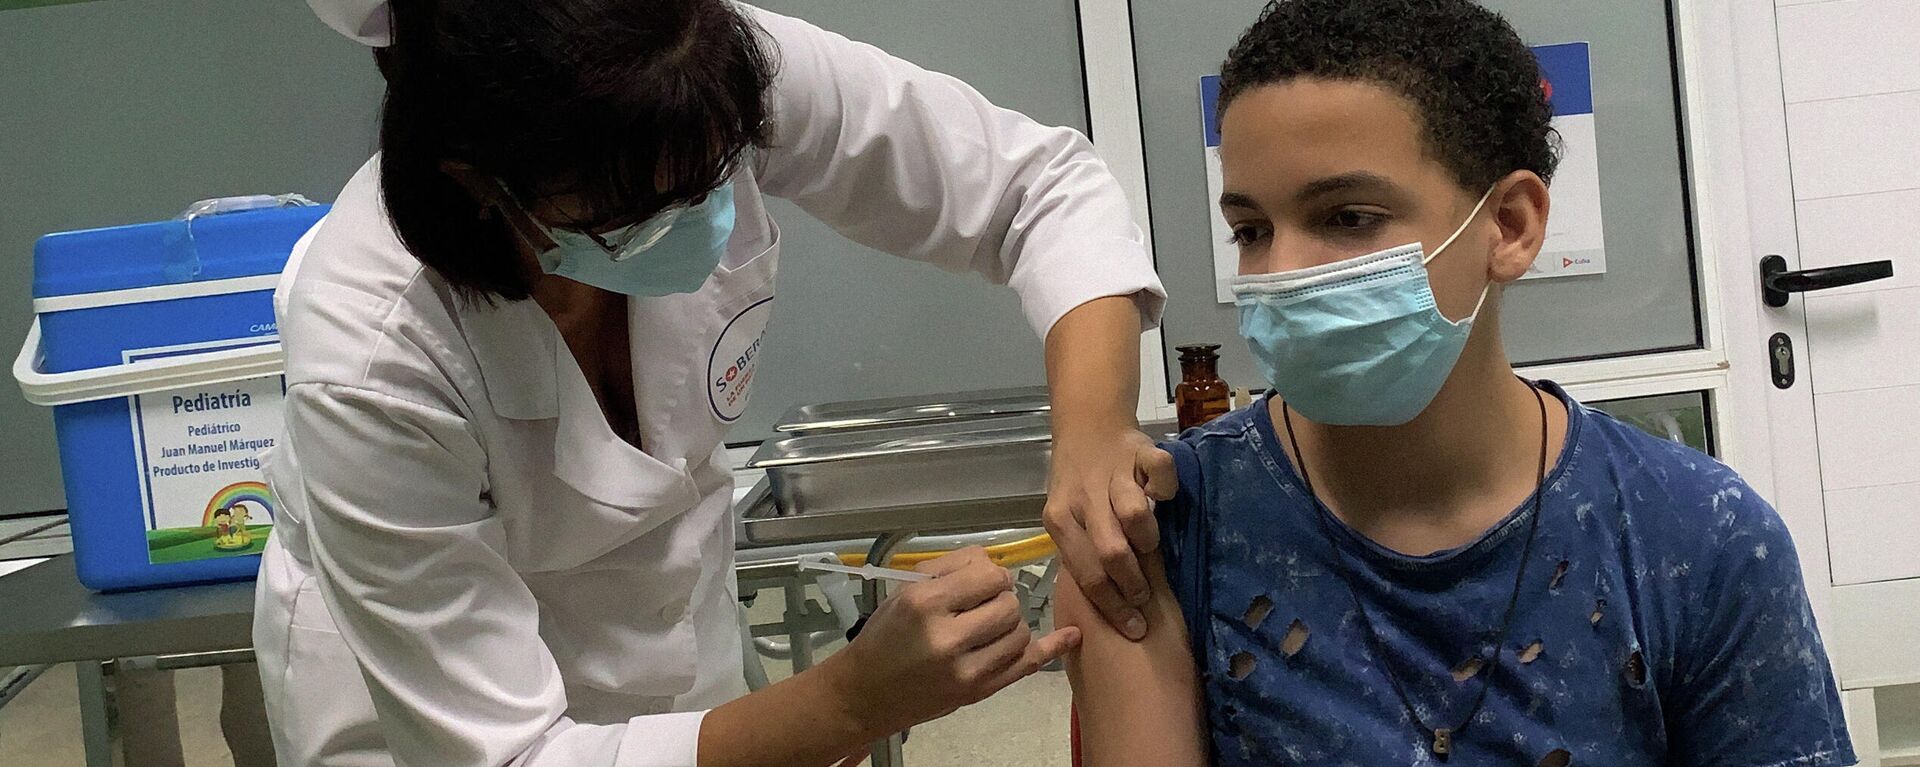 Menino cubano de 13 anos recebe a vacina cubana Soberana Plus contra a COVID-19, em 24 de agosto de 2021, no hospital Juan Manuel Márquez, em Havana, durante os testes do imunizante em crianças e adolescentes - Sputnik Brasil, 1920, 24.12.2021